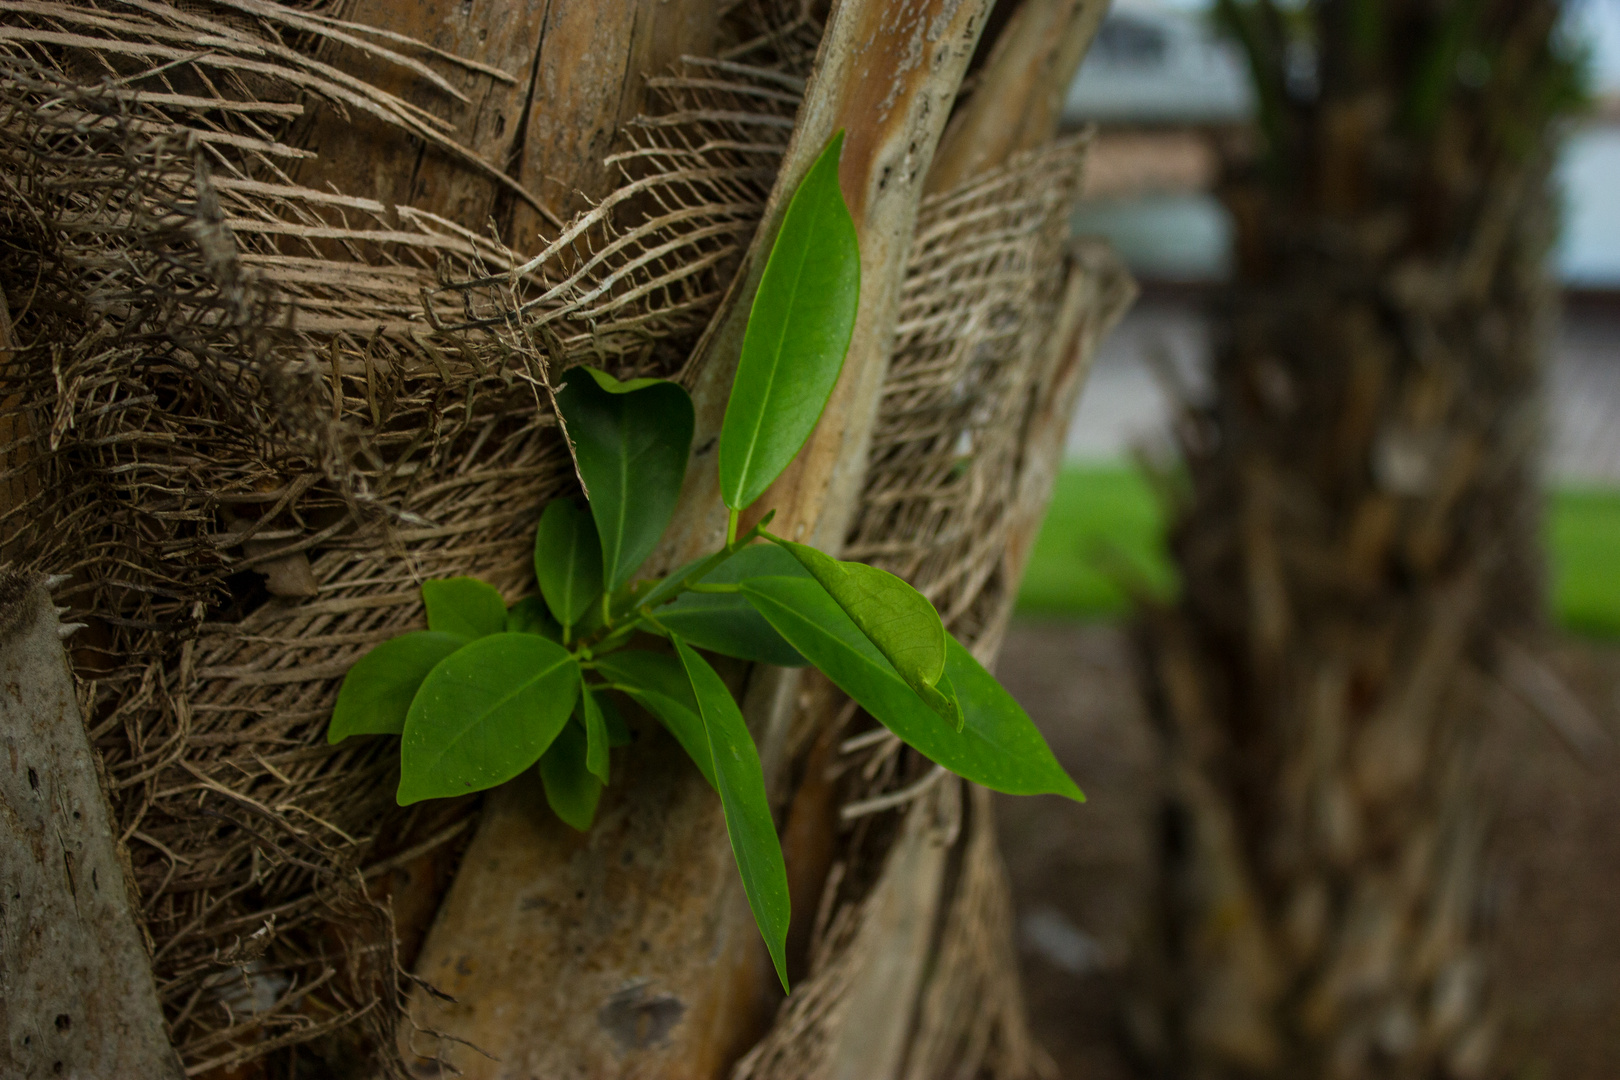 Epiphytic Plant